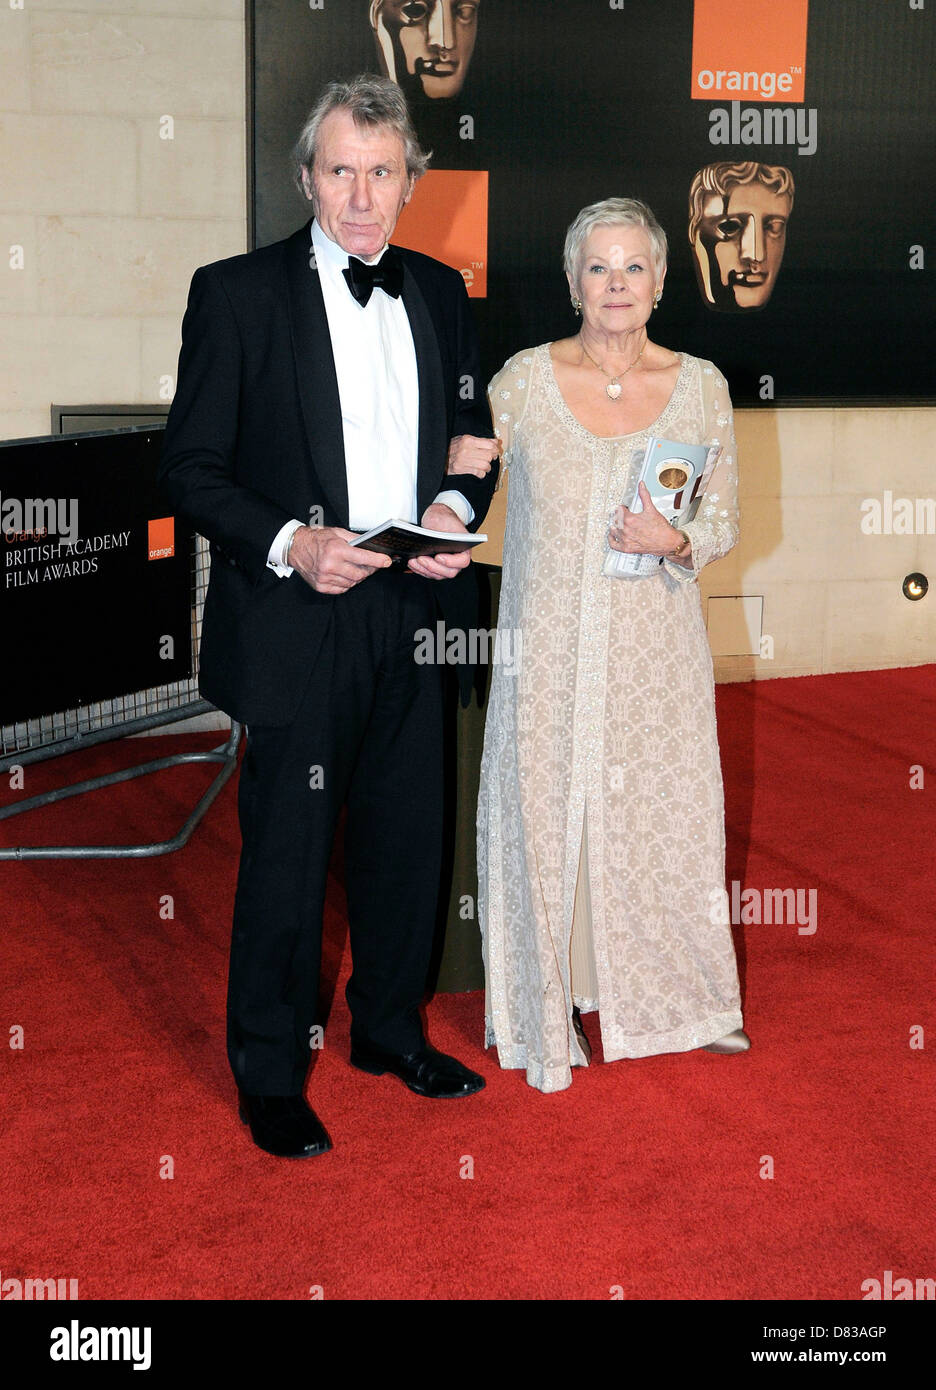 Dame Judi Dench Orange British Academy Film Awards (BAFTAs) afterparty tenutosi presso la struttura Grosvenor House Hotel - all'esterno degli Arrivi Foto Stock